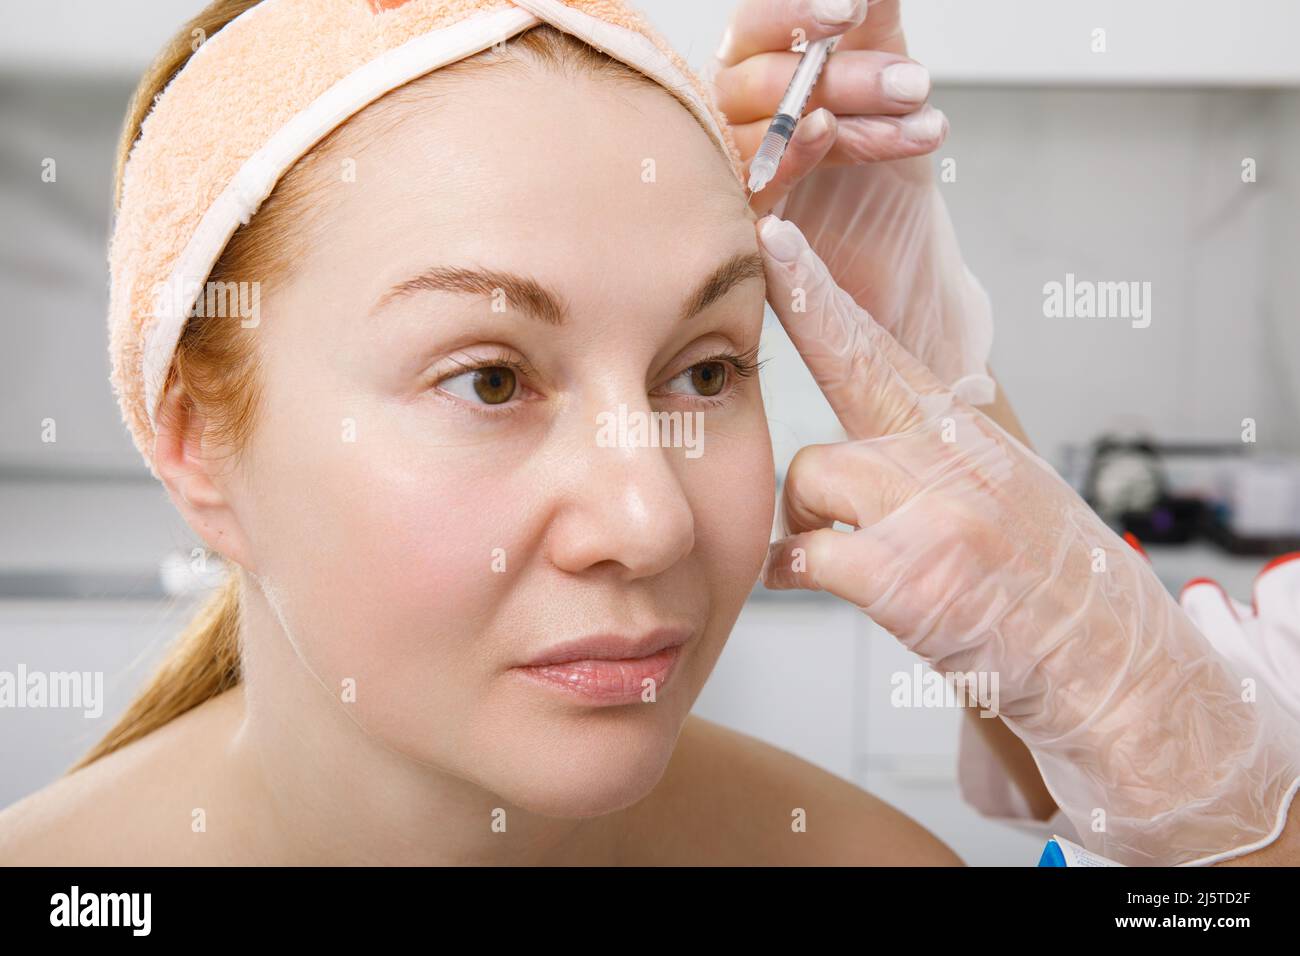 Un cosmetologo esegue una procedura di ringiovanimento delle iniezioni per il viso per stringere e levigare le rughe sulla pelle del viso di una donna Foto Stock